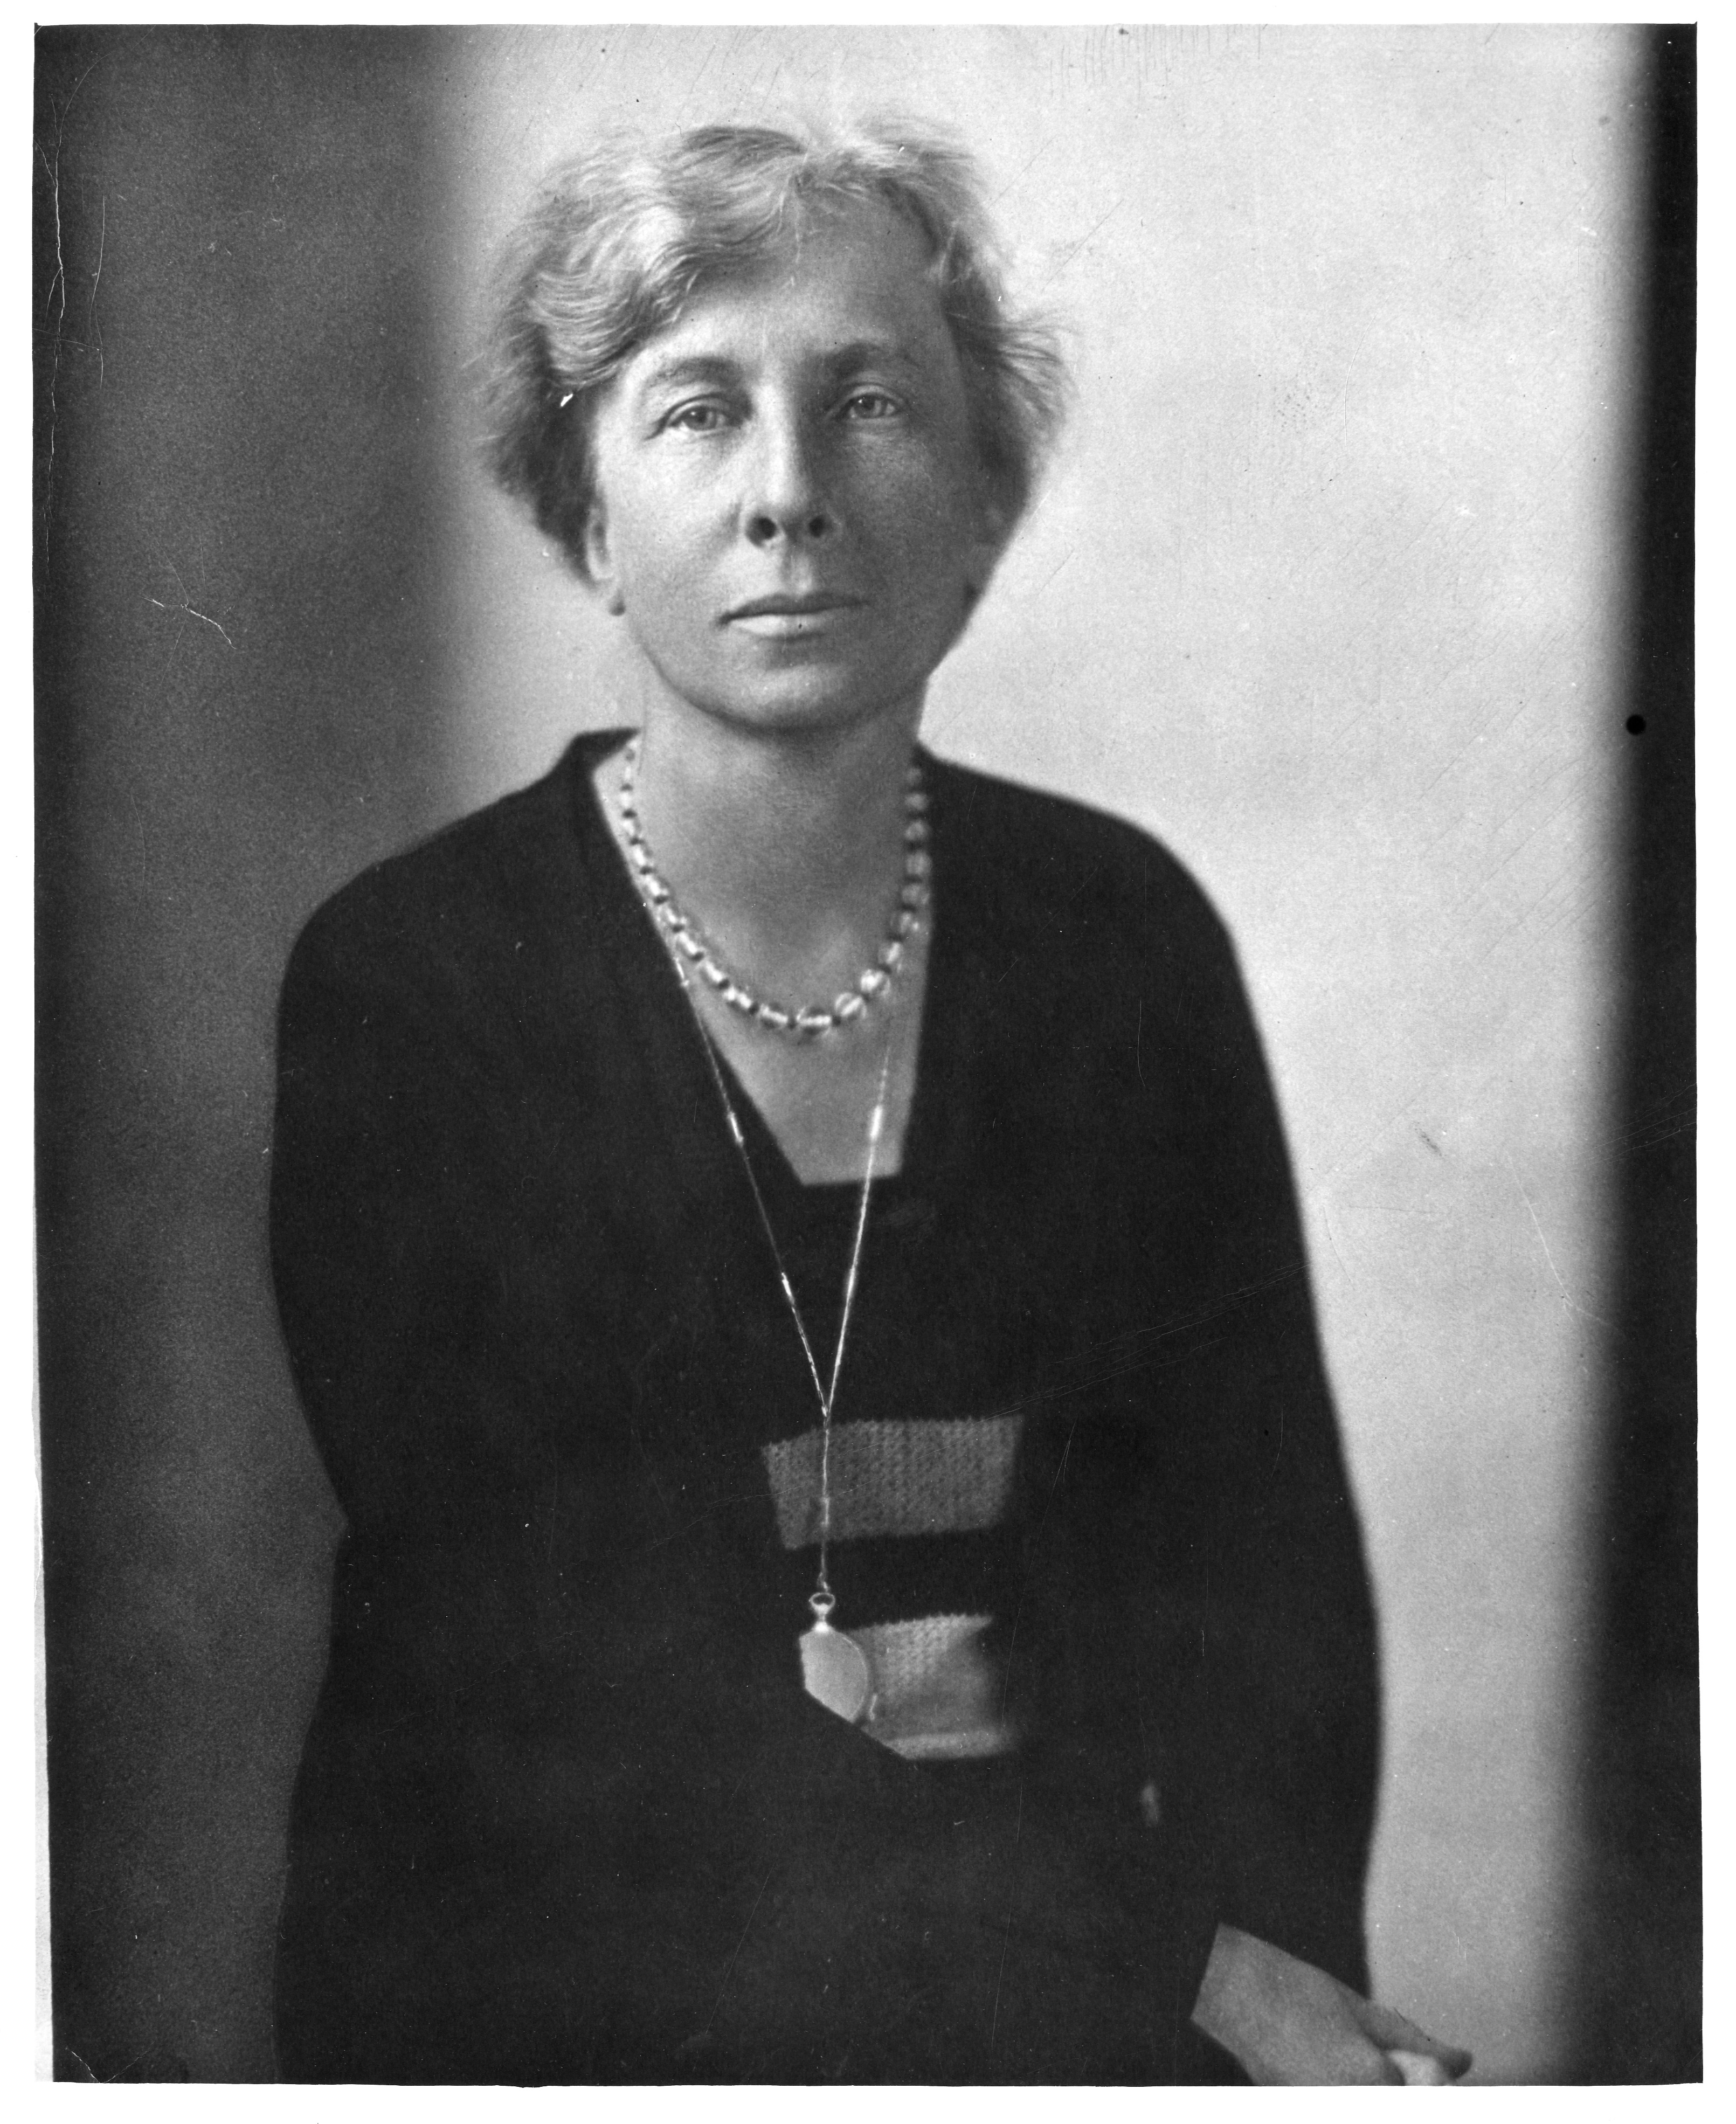 Lillian Moller Gilbreth